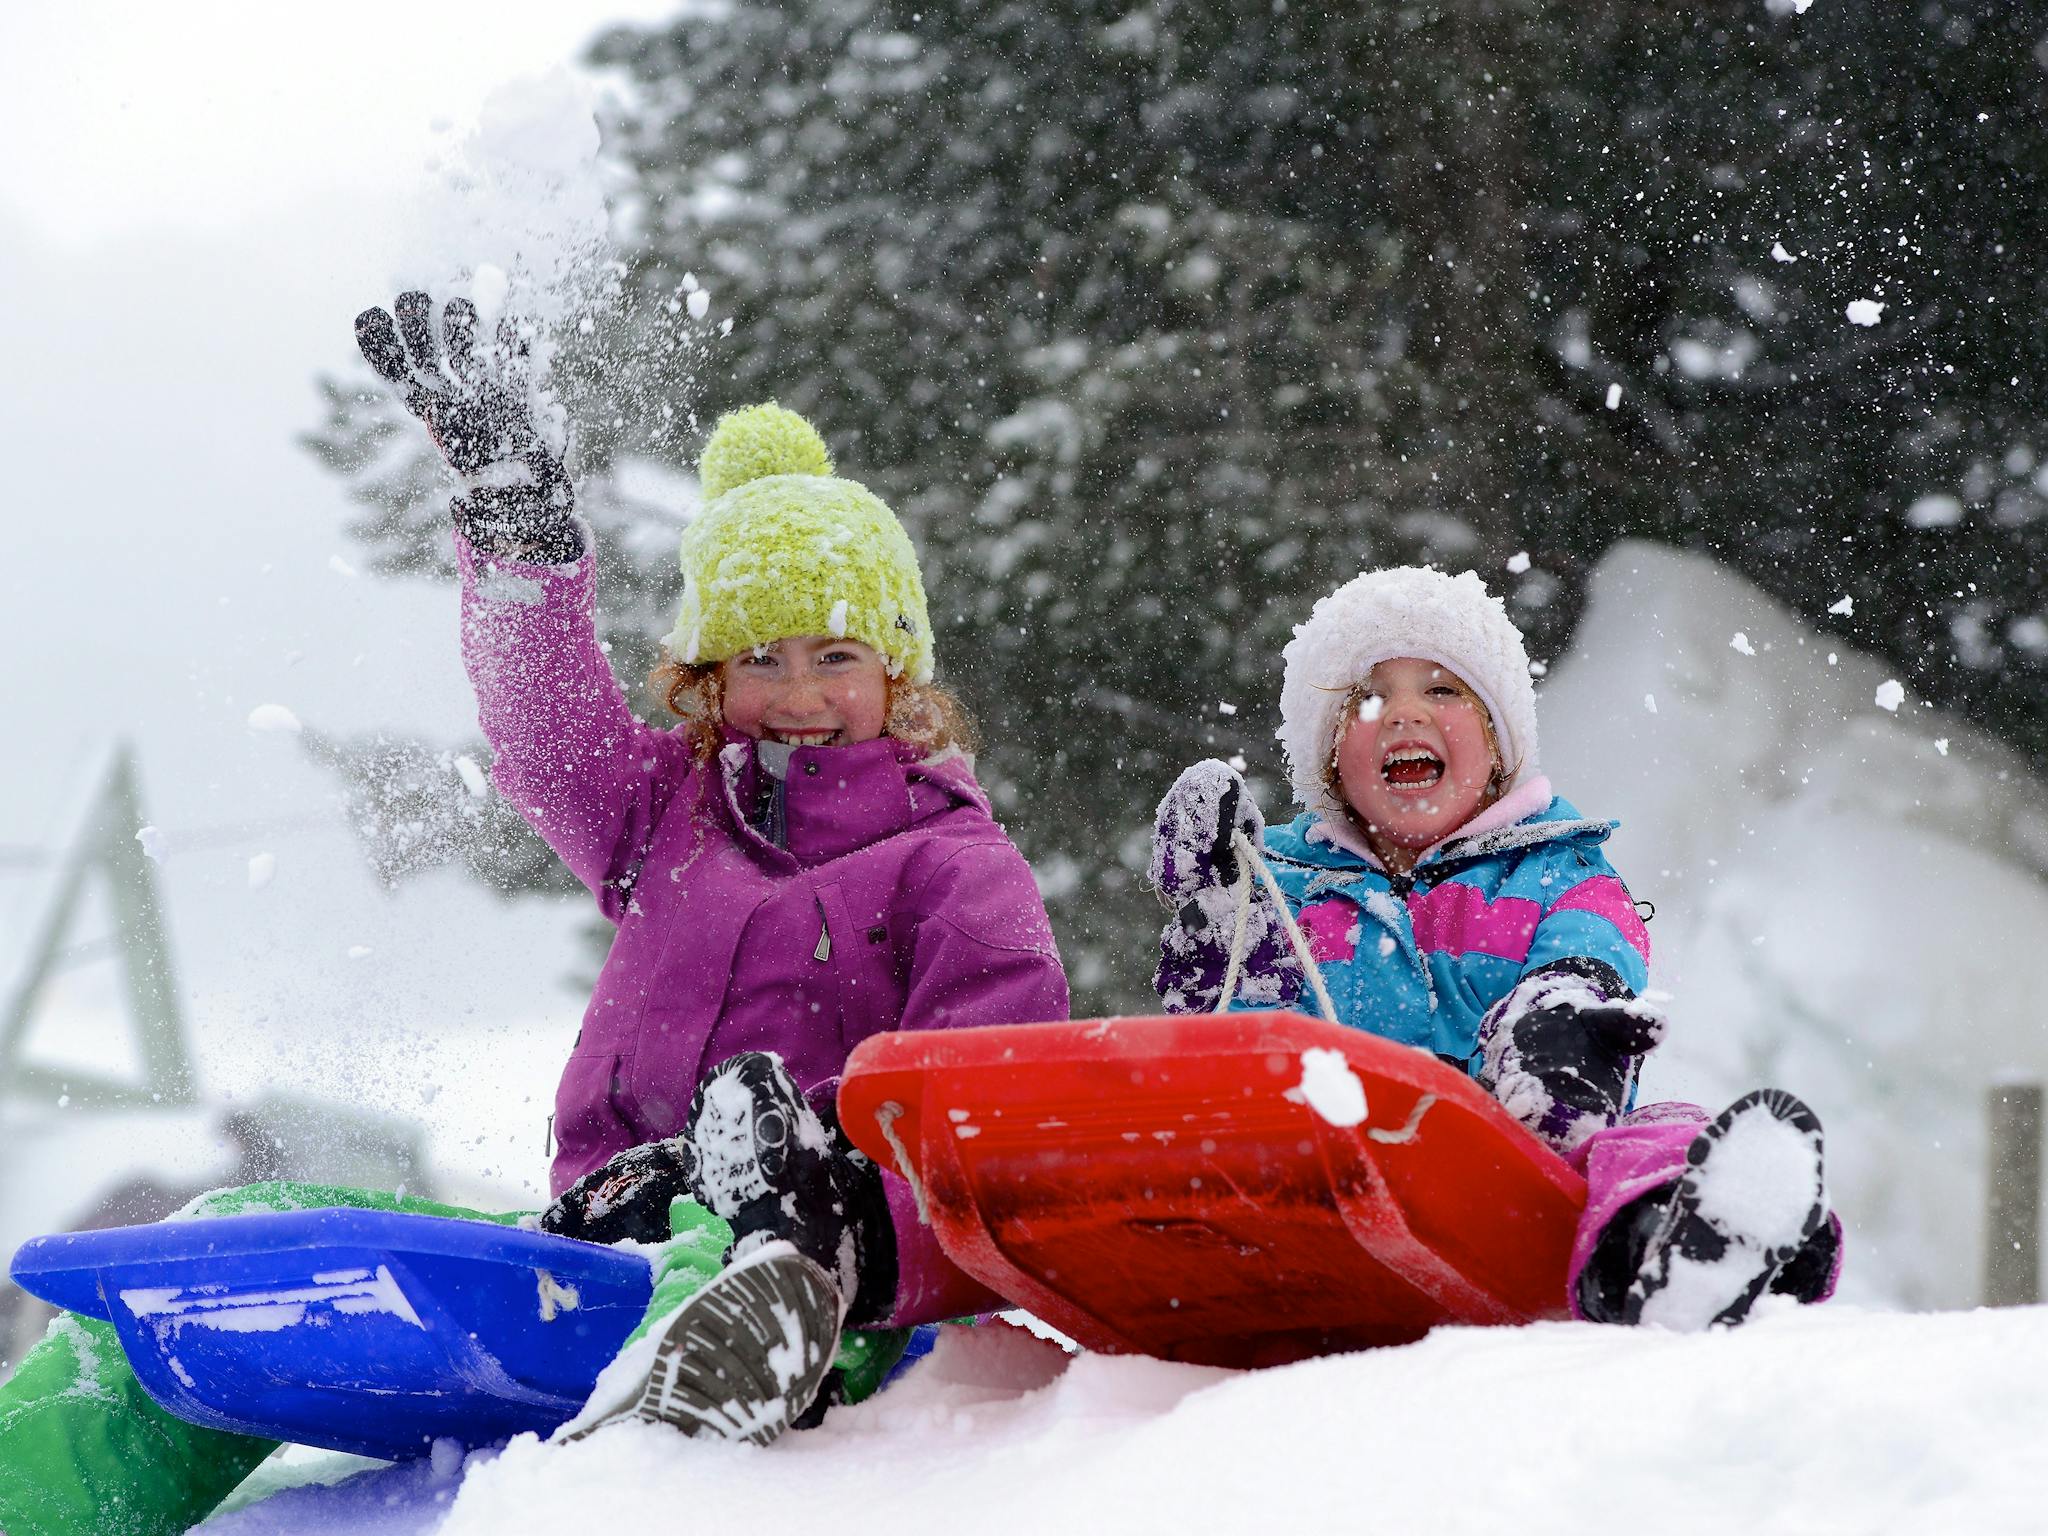 Children Tobogganing in snow